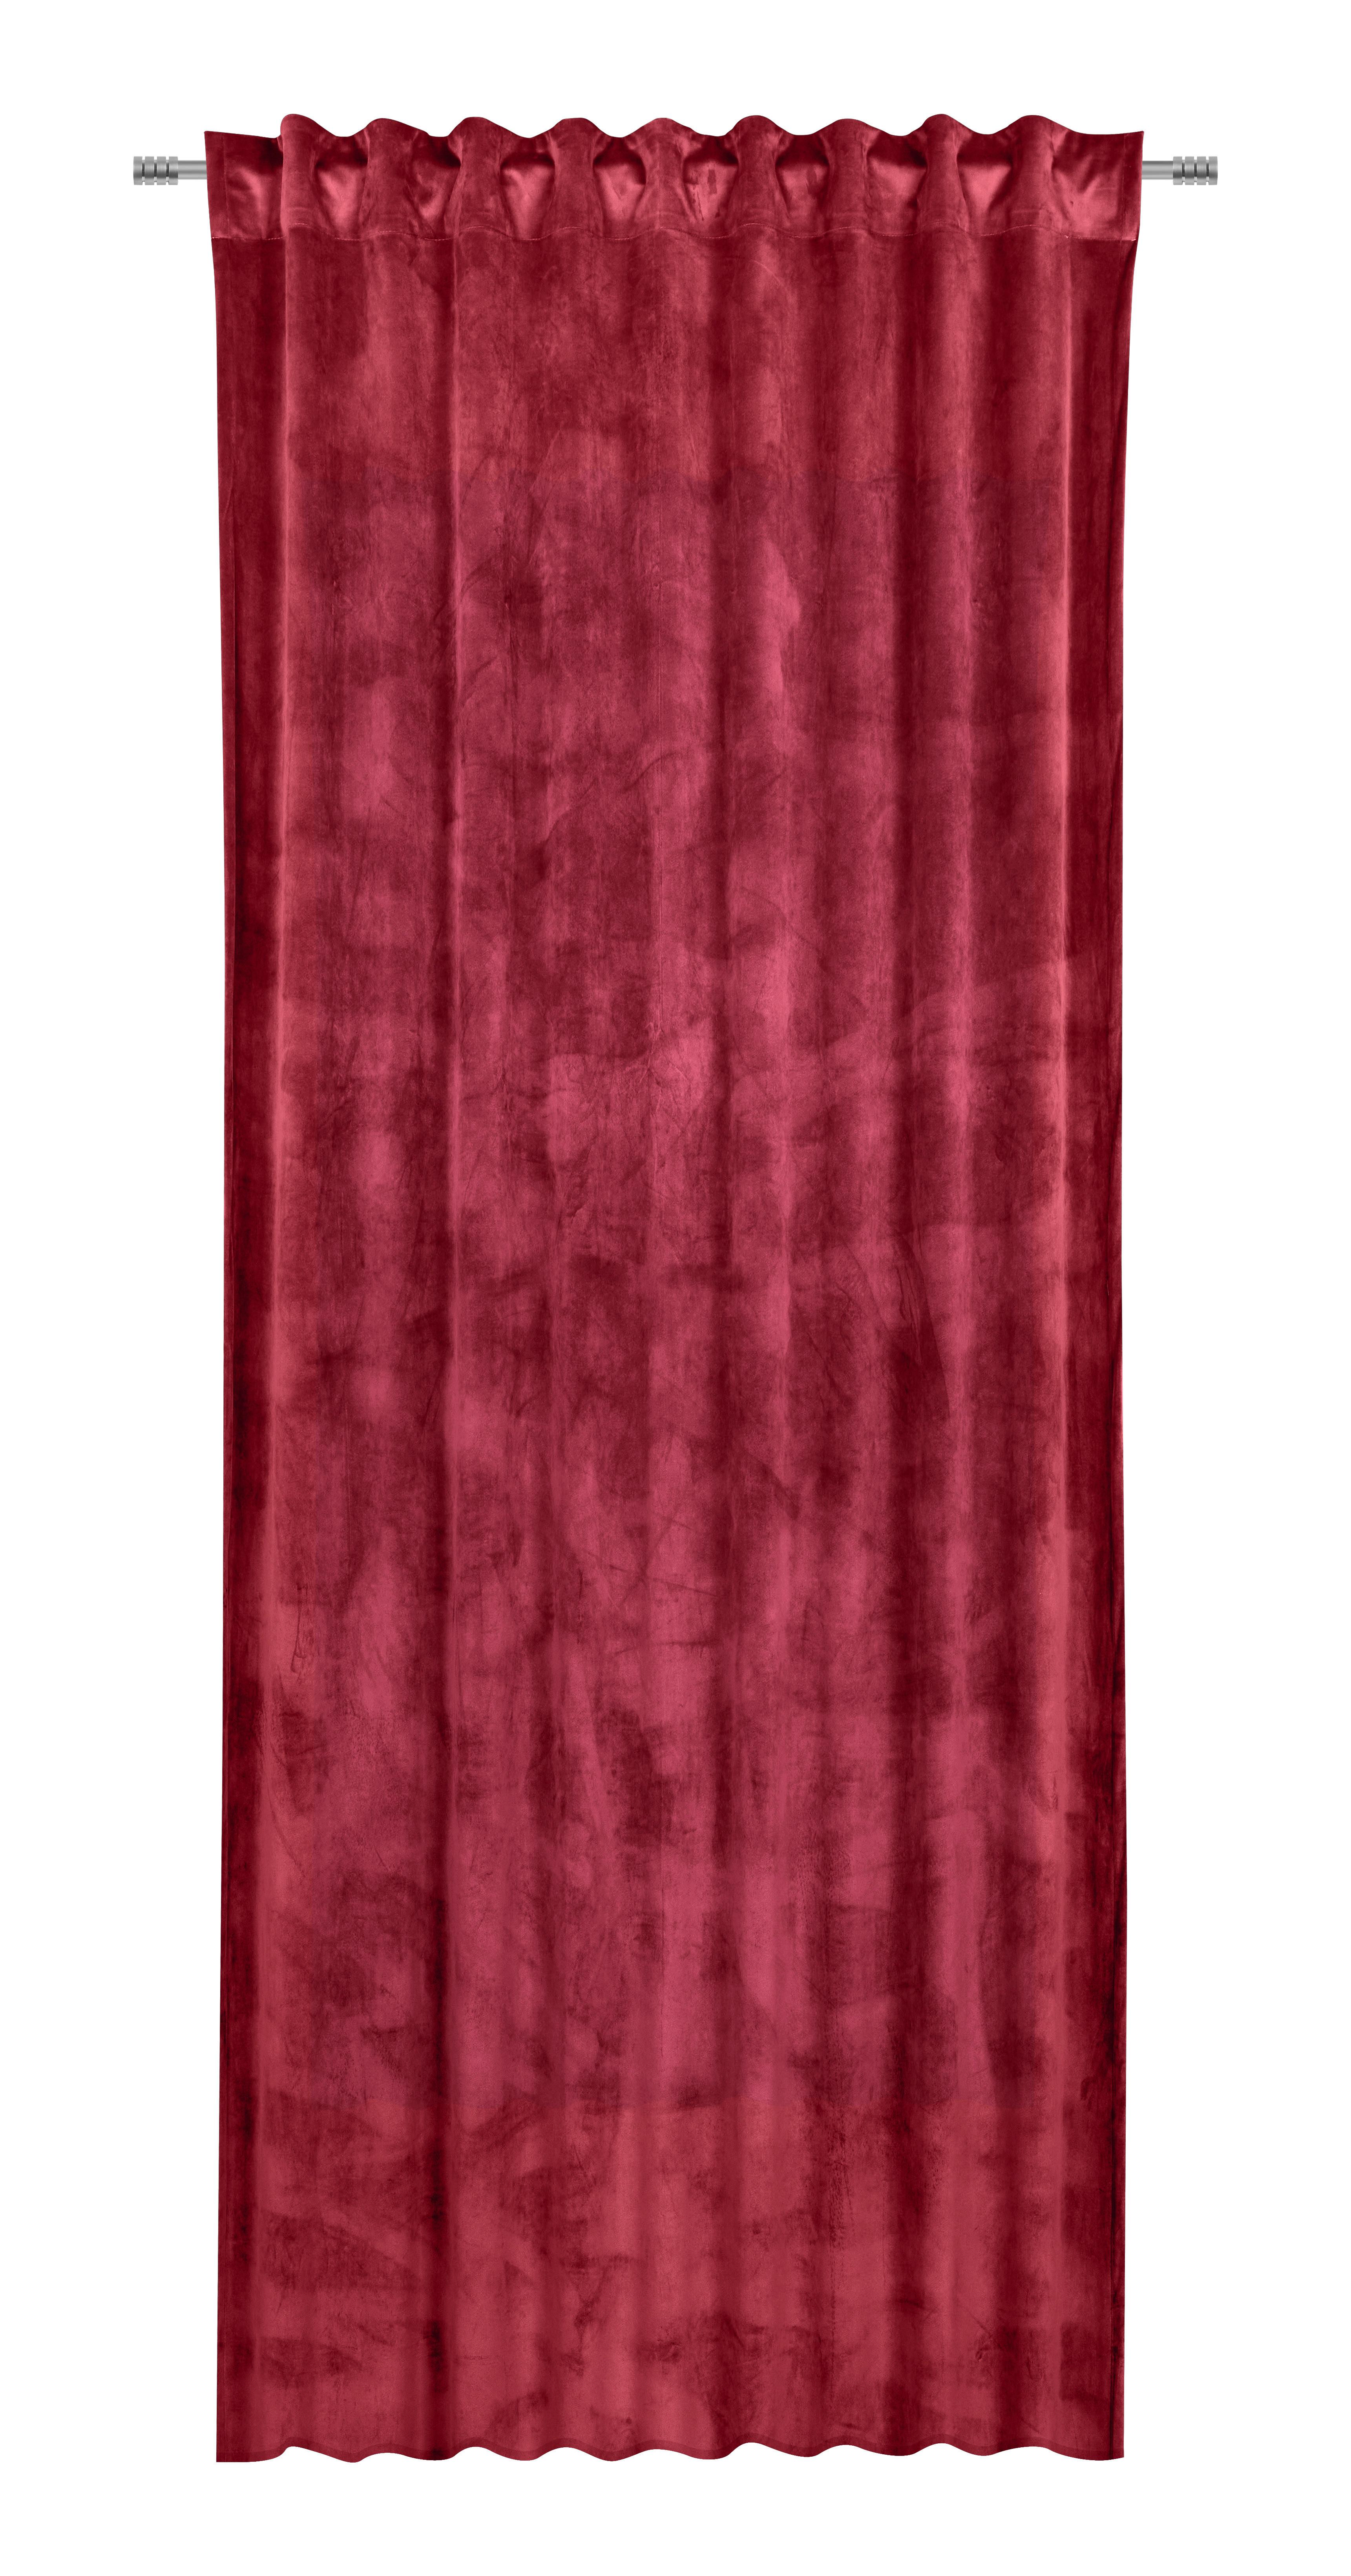 Končana Zavesa Viola - bordo, Konvencionalno, tekstil (140/245cm) - Premium Living